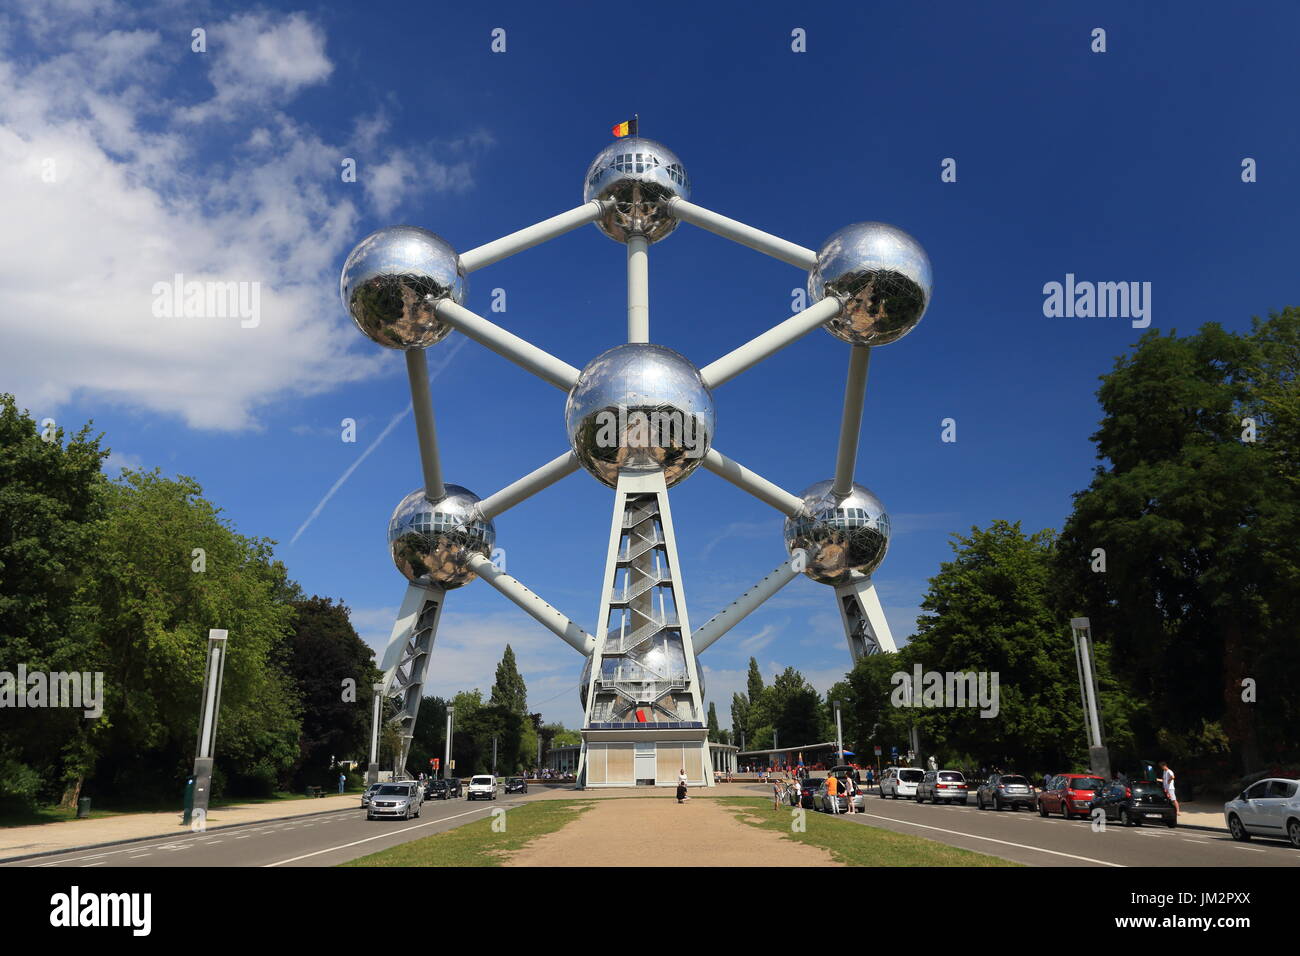 Brüssel, Belgien - 17. Juli 2017: Denkmal Atomium in Brüssel an einem sonnigen Sommertag. Stockfoto